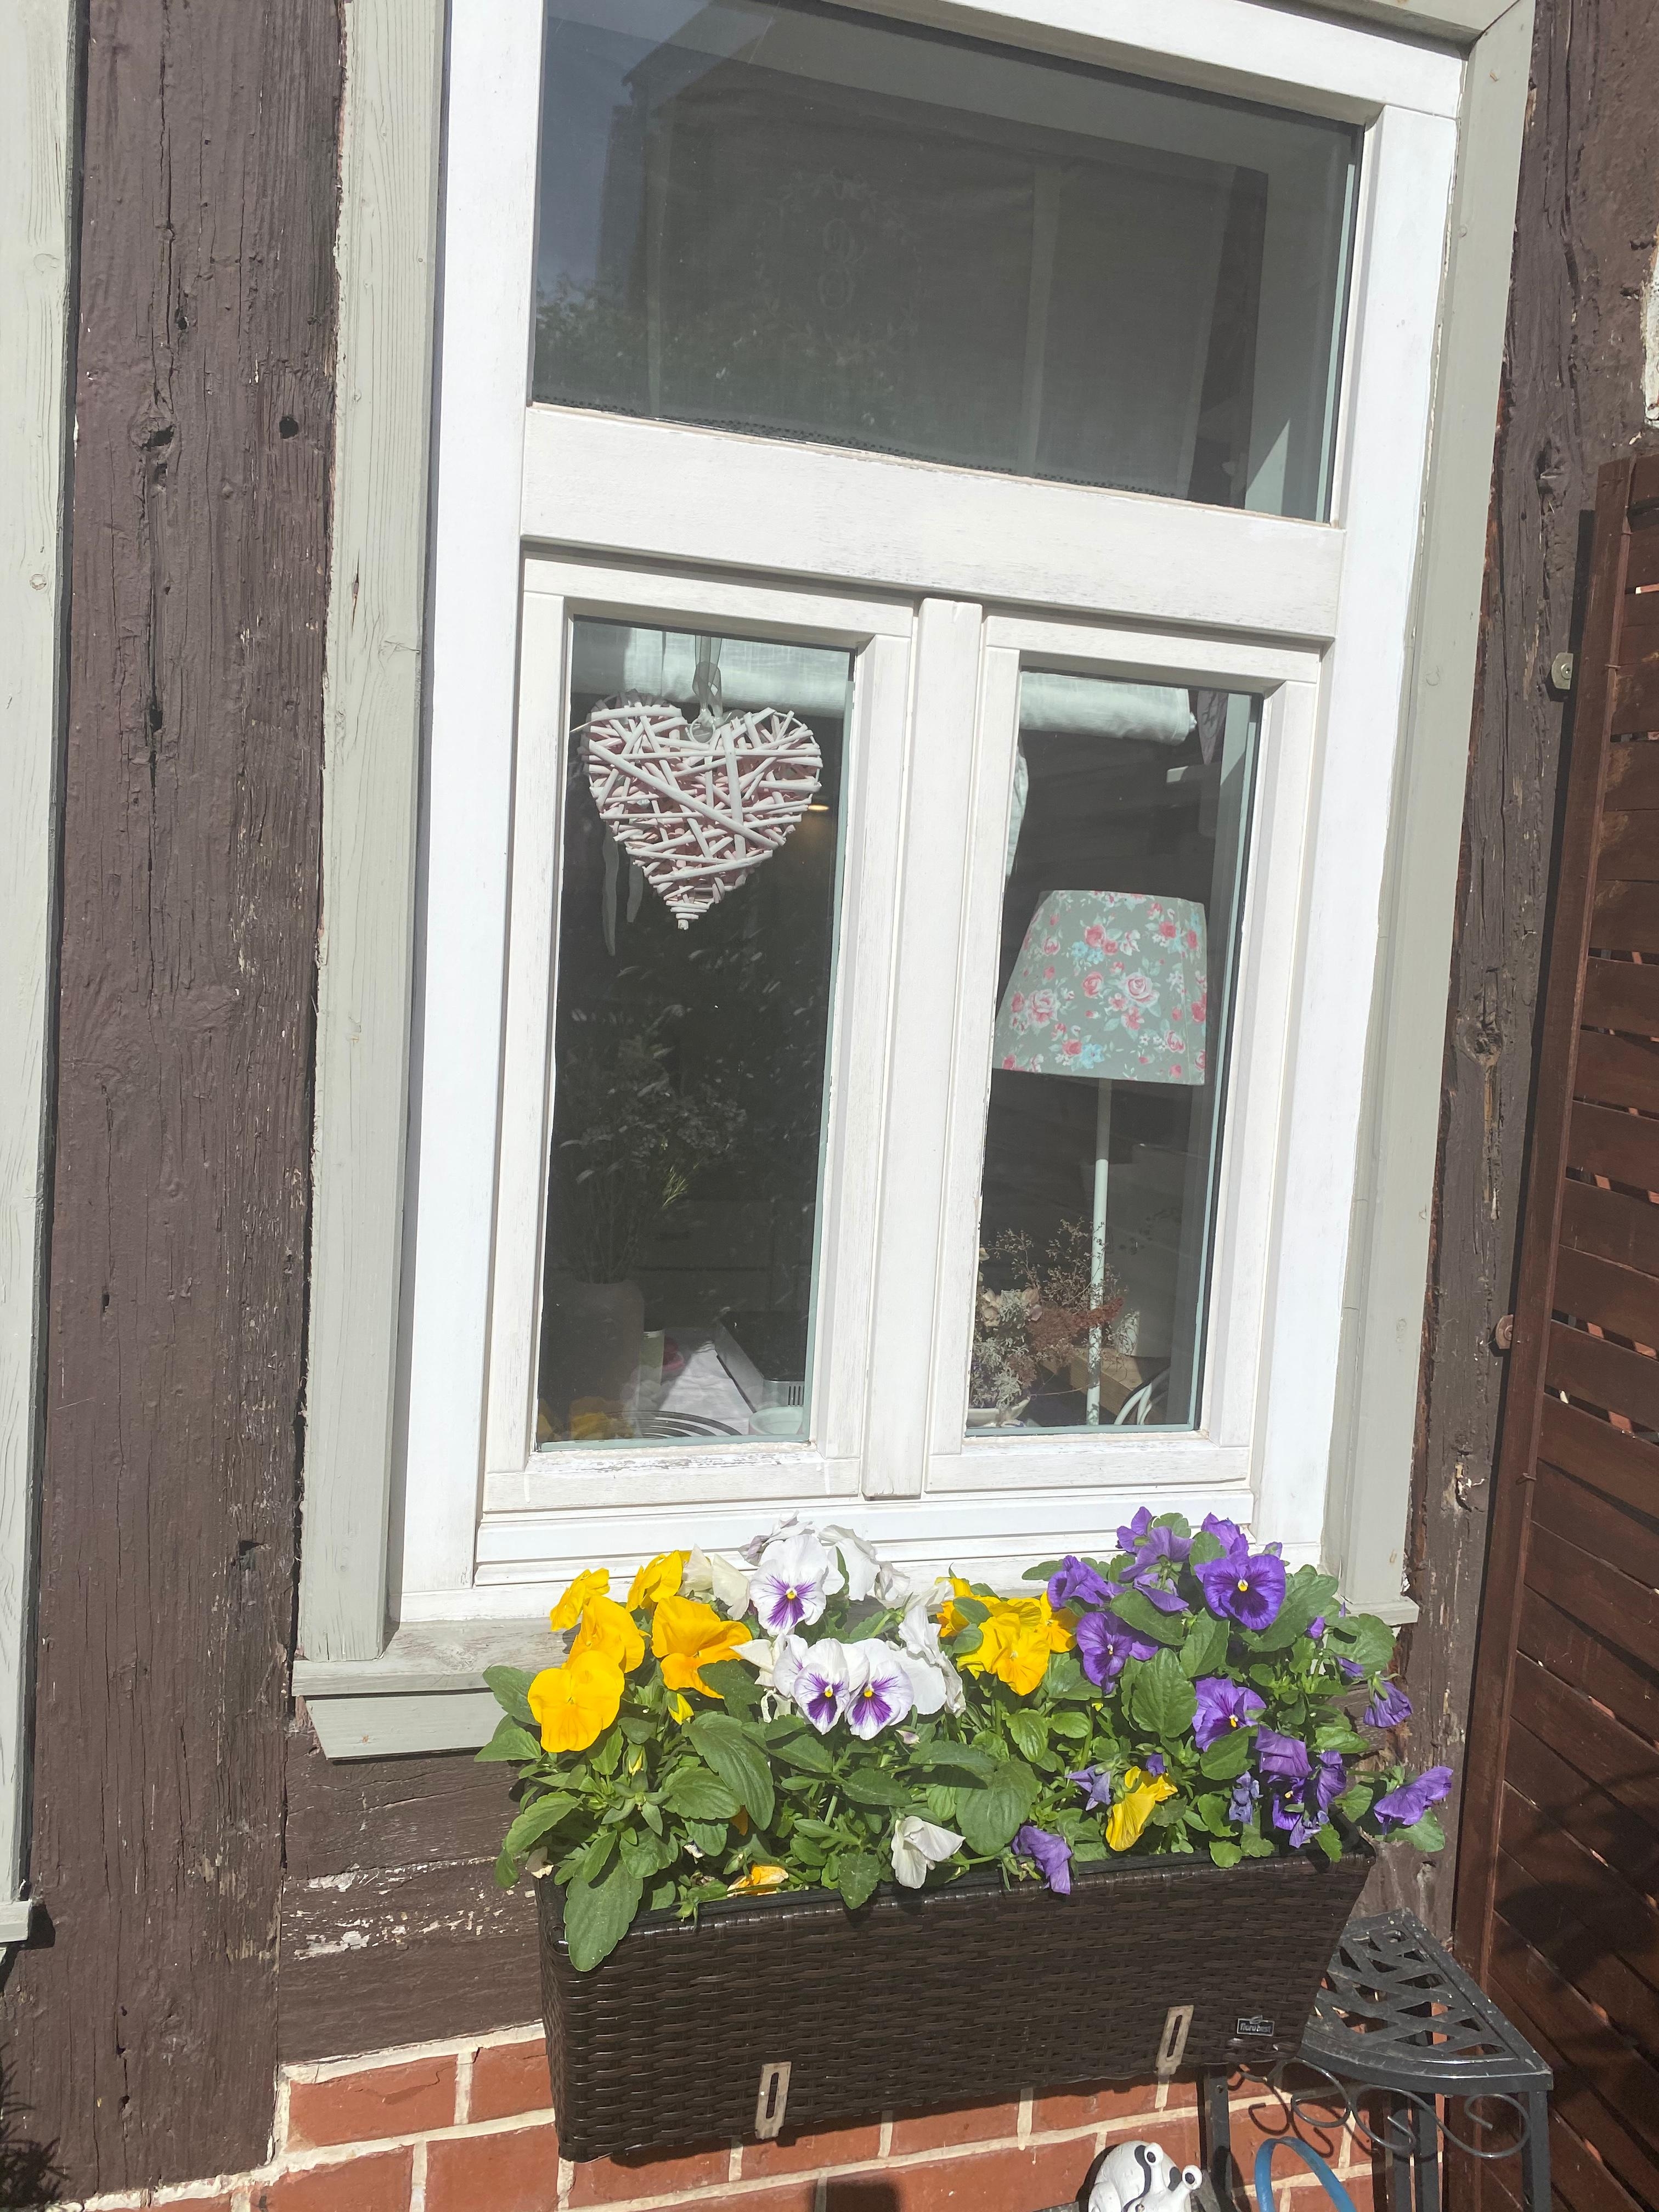 Von außen kann sich unser Küchenfenster aber auch sehen lassen!!!
#garden #landhausstil #gartenliebe #sunshine